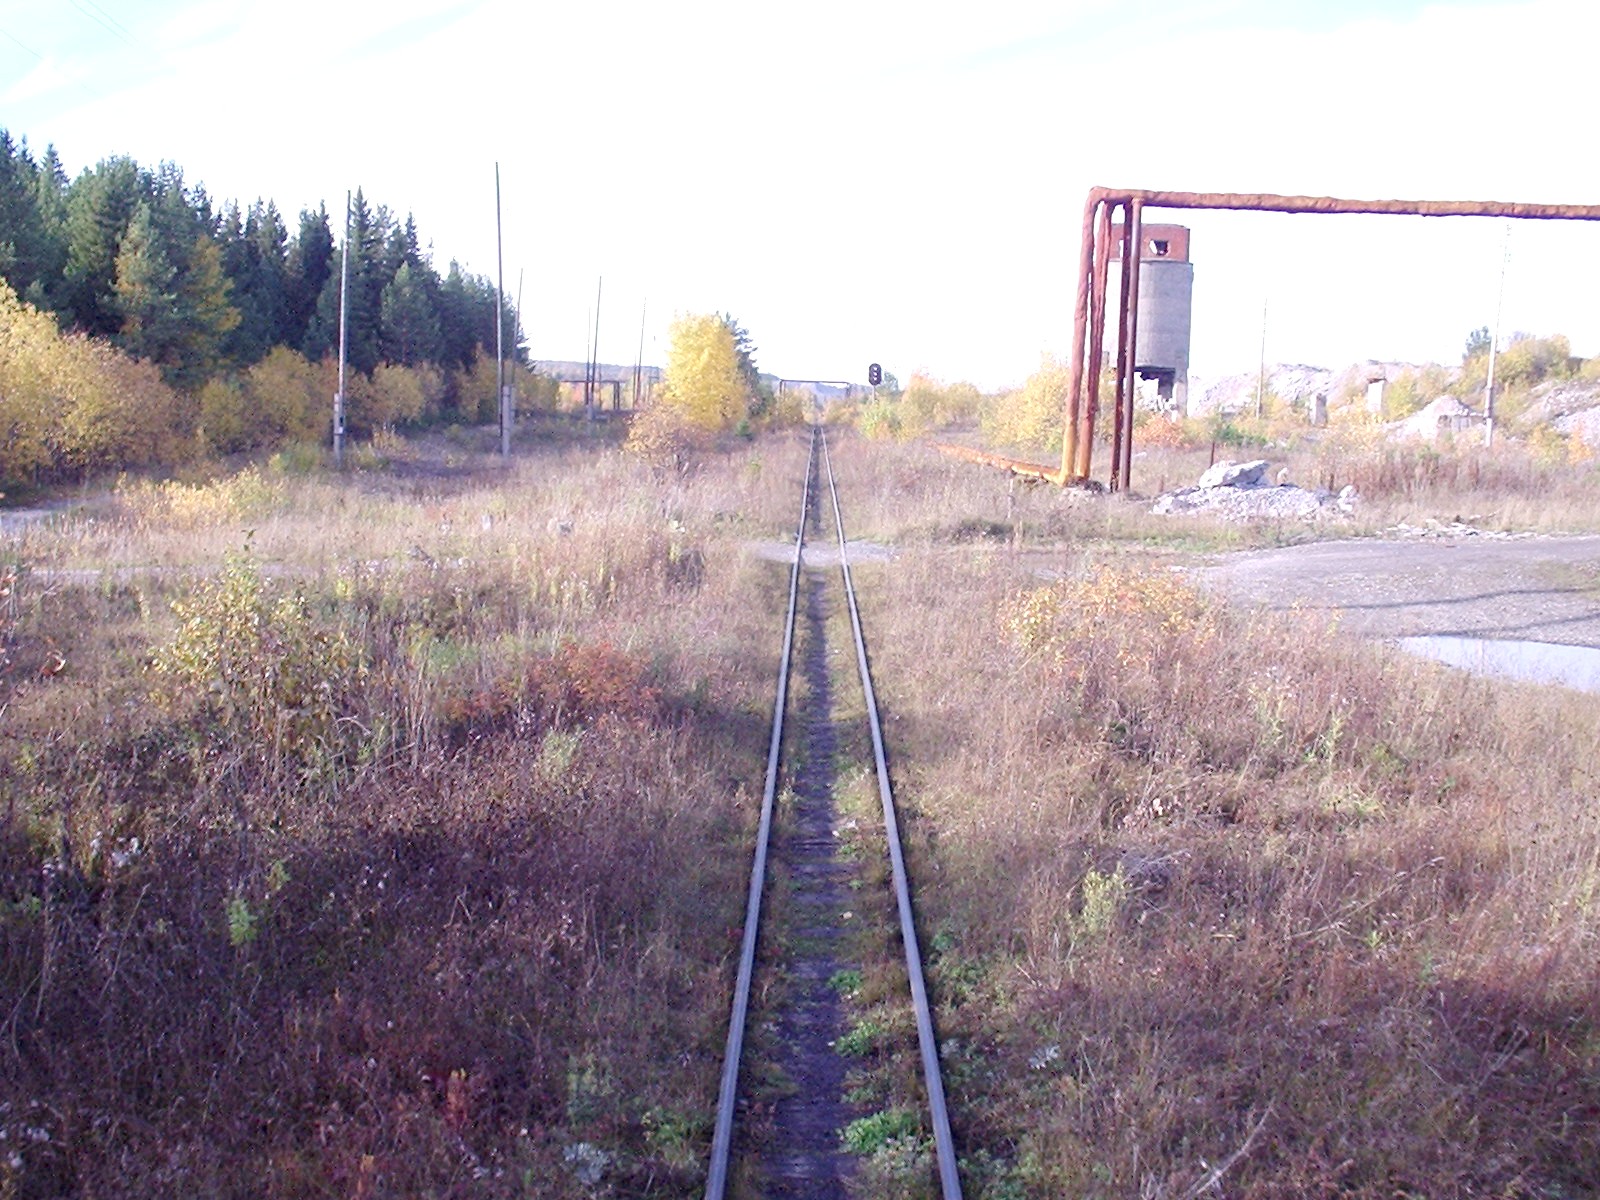 Висимо-Уткинская узкоколейная железная дорога  - фотографии, сделанные в 2006 году (часть 12)